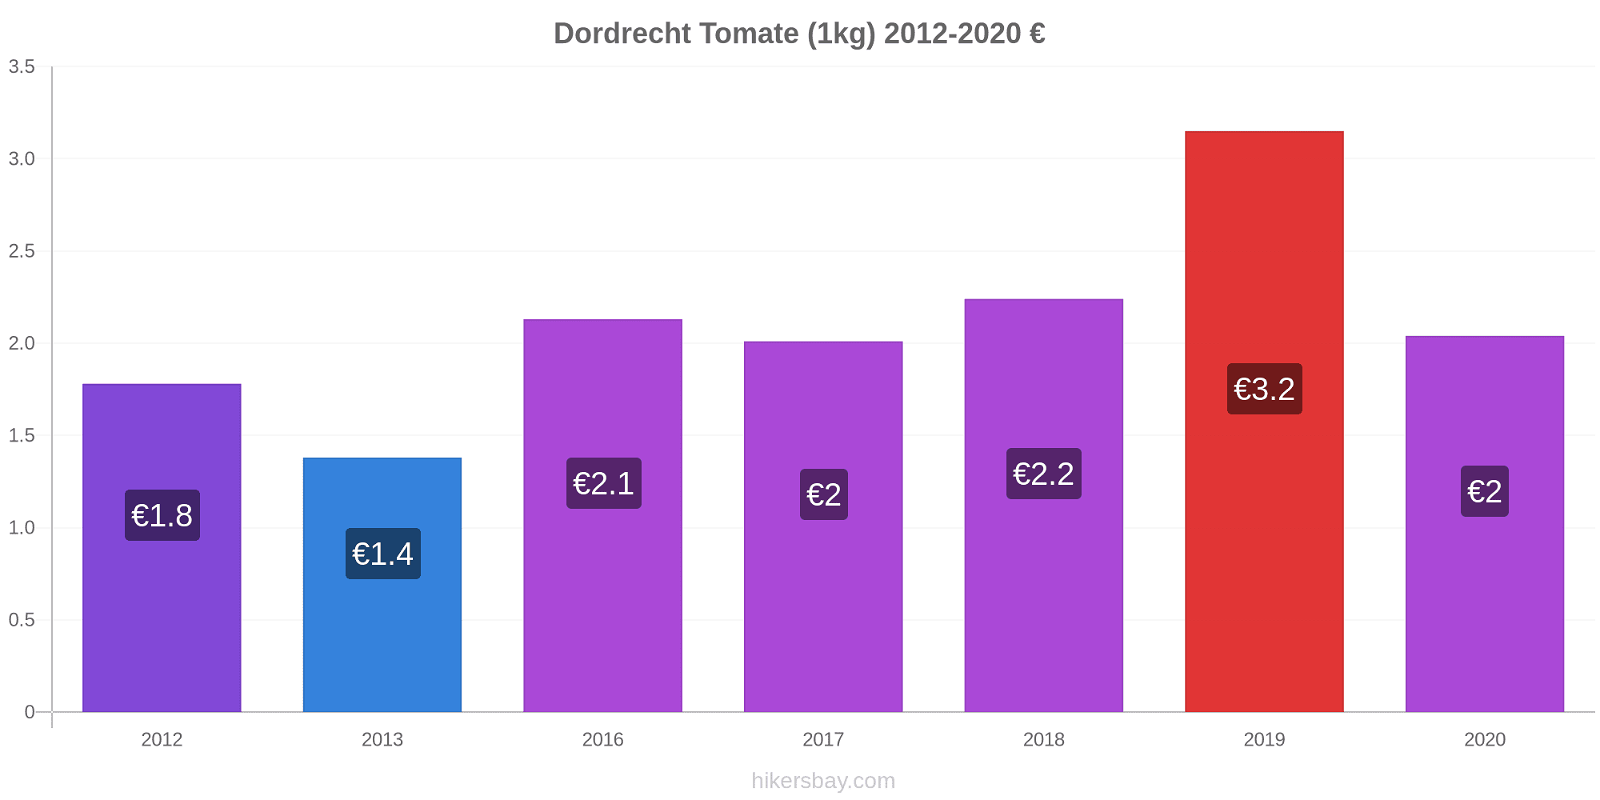 Dordrecht cambios de precios Tomate (1kg) hikersbay.com